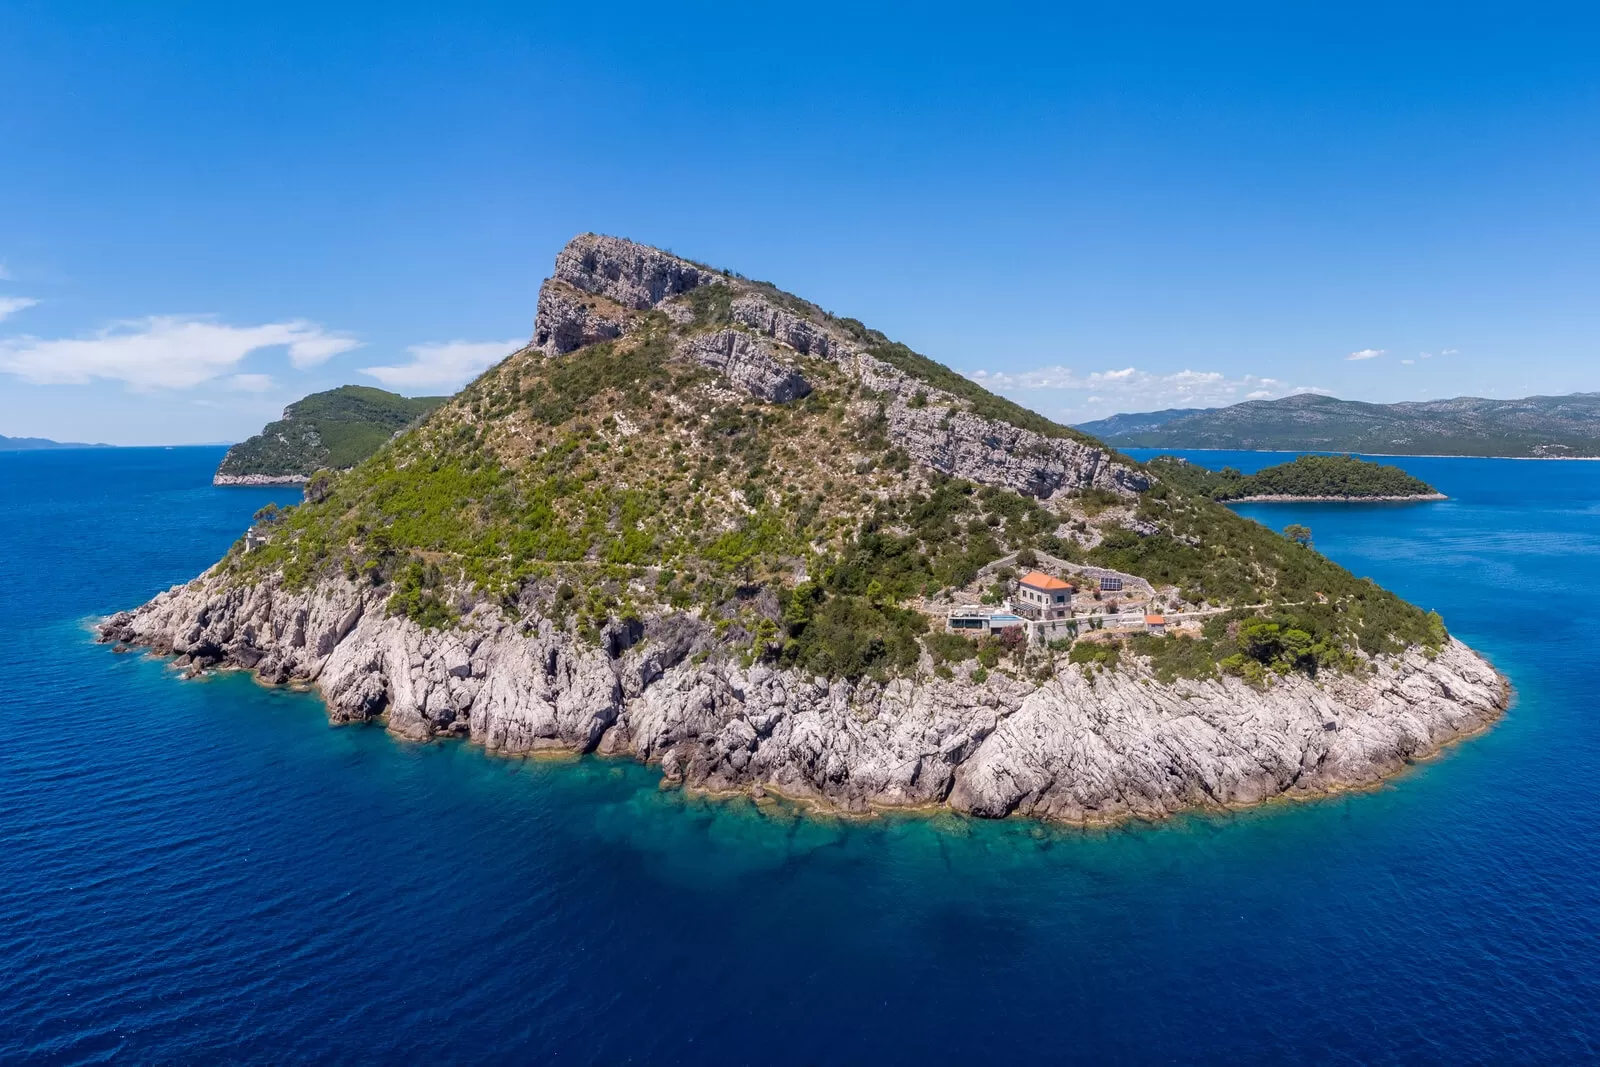 Jedinstveni smještaj na privatnom otočiću blizu Dubrovnika